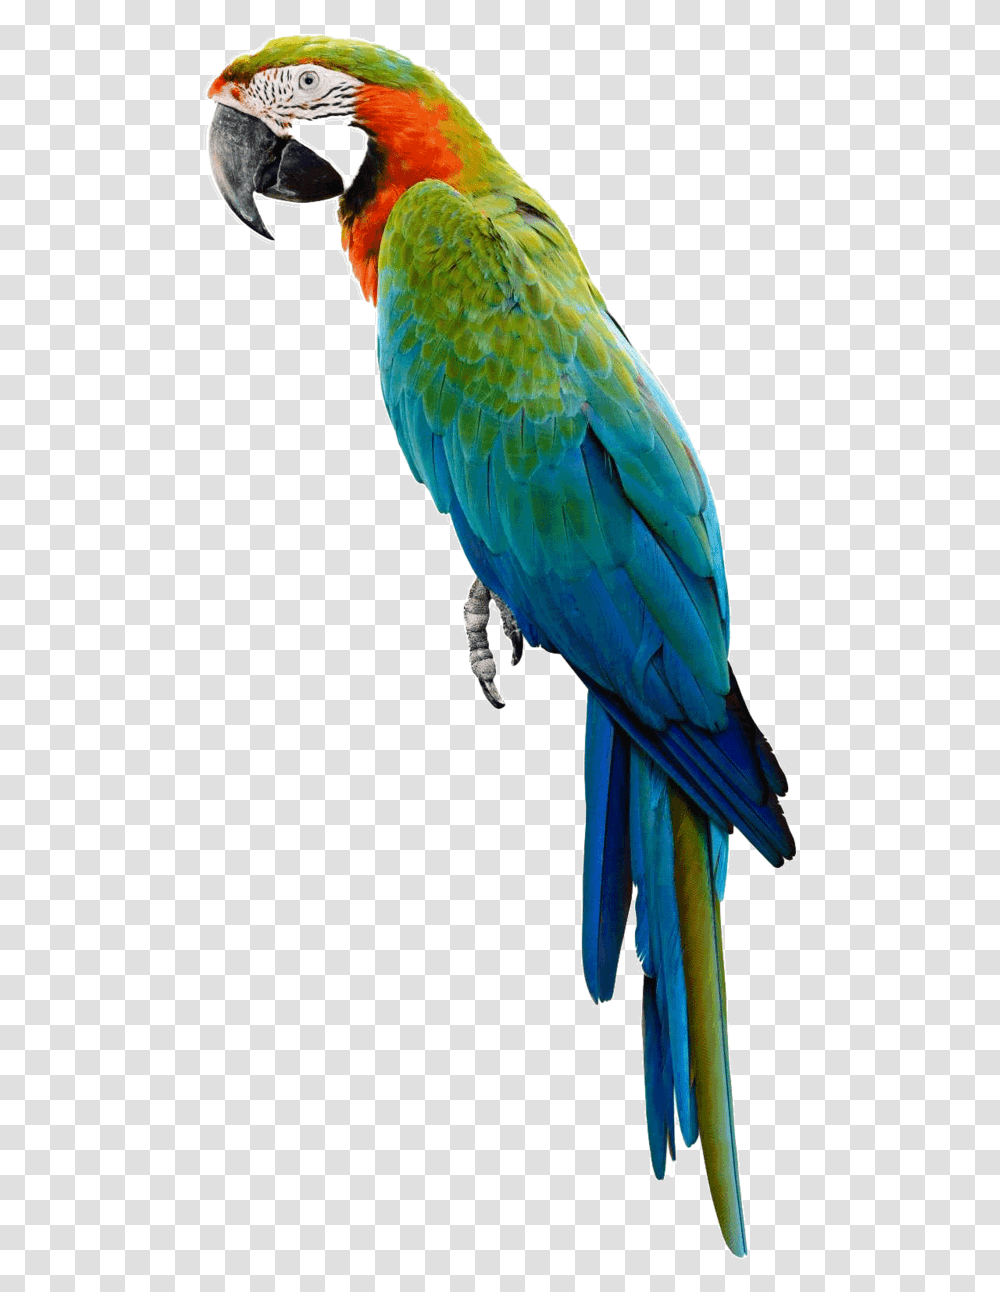 Parrot, Bird, Animal, Macaw Transparent Png